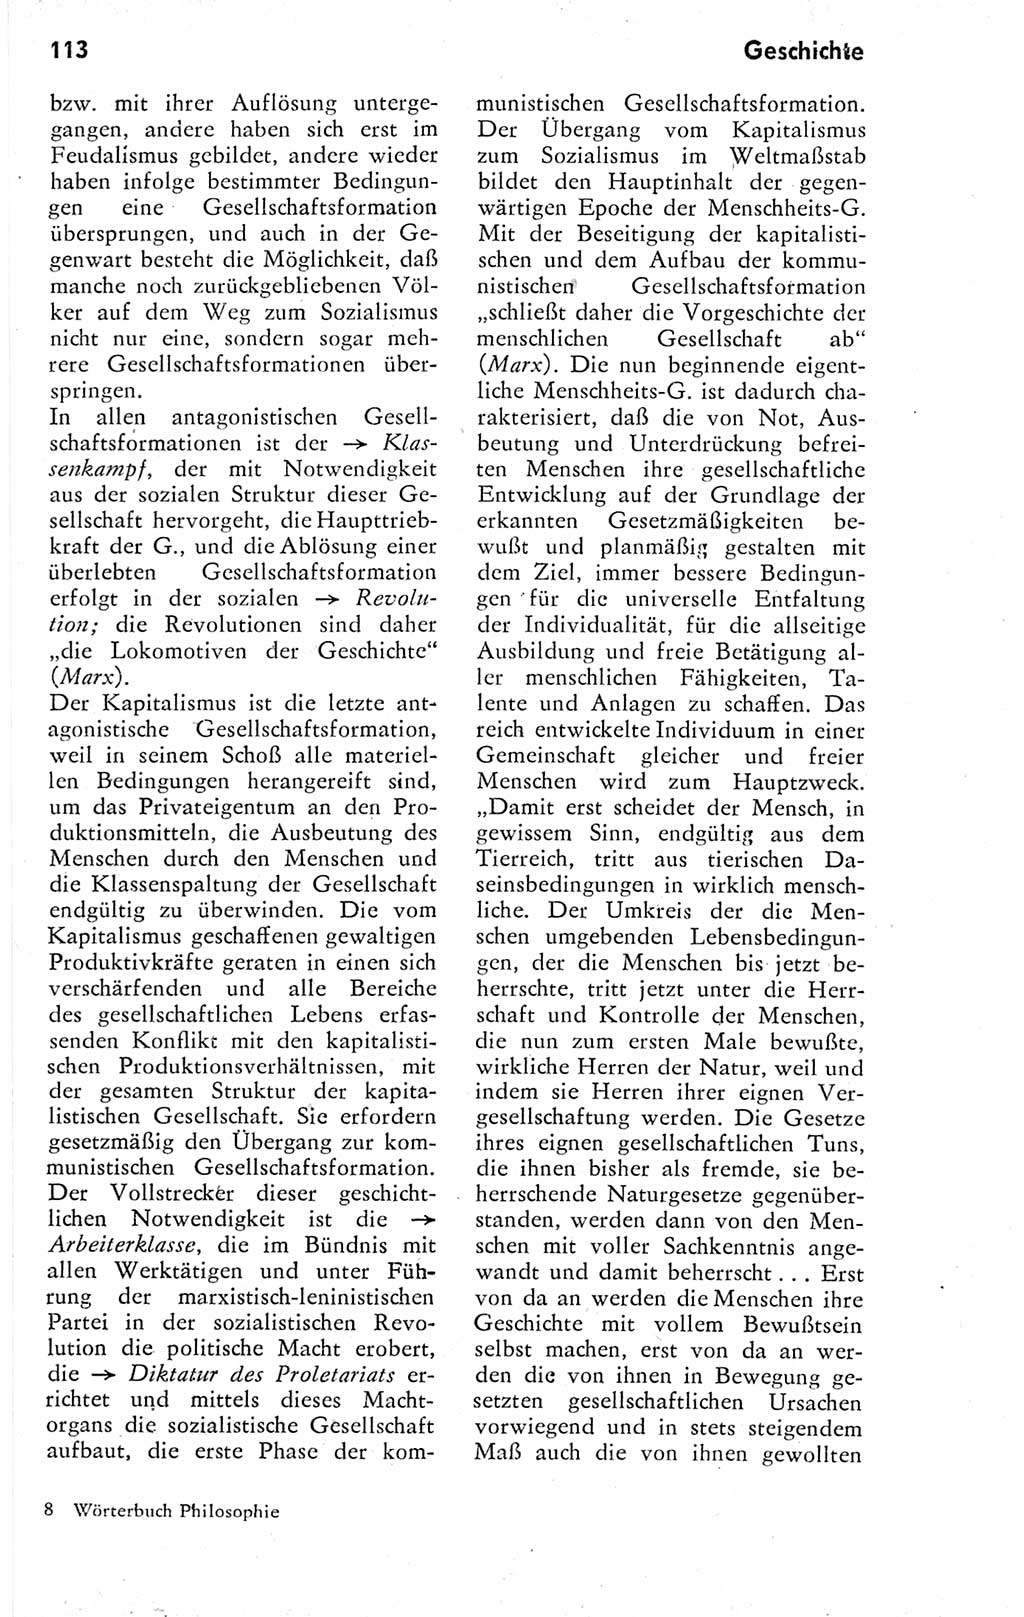 Kleines Wörterbuch der marxistisch-leninistischen Philosophie [Deutsche Demokratische Republik (DDR)] 1974, Seite 113 (Kl. Wb. ML Phil. DDR 1974, S. 113)